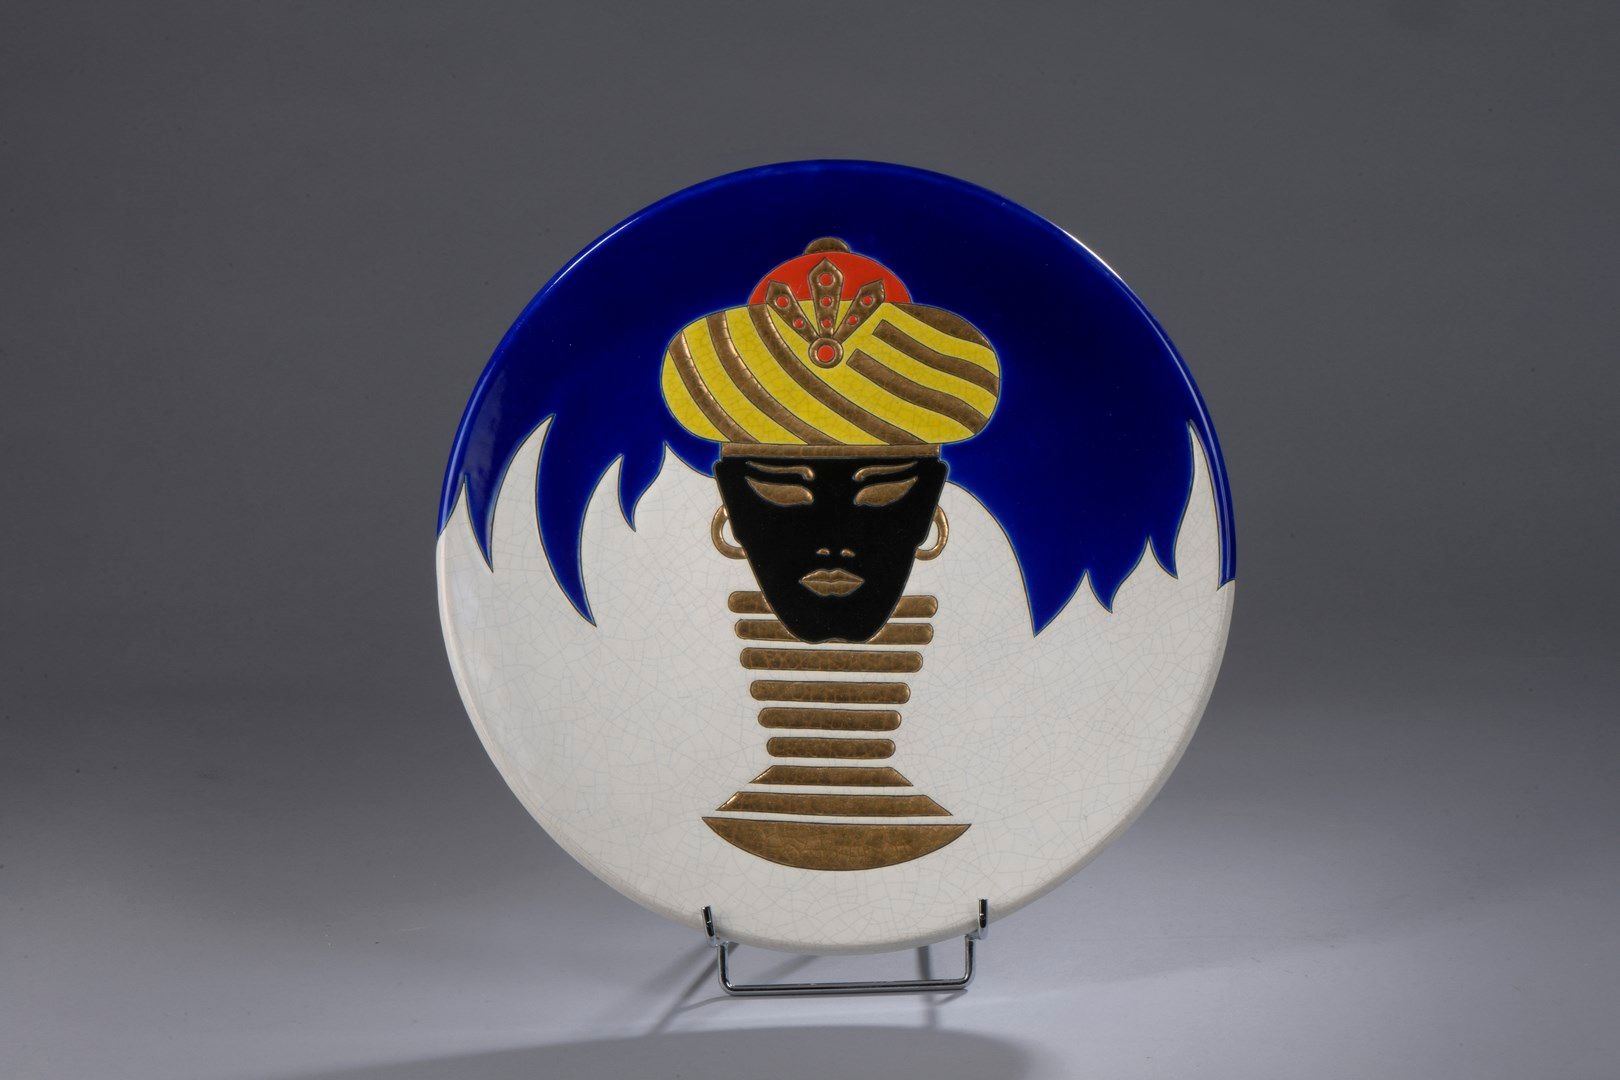 Null 达尼洛-库雷蒂(1953-1993)和费恩塞里-德-隆维为内格拉斯科酒店创作的作品

完全覆盖着珐琅彩的大型圆形陶瓷盘。在蓝白相间的裂纹背景上装饰着一&hellip;